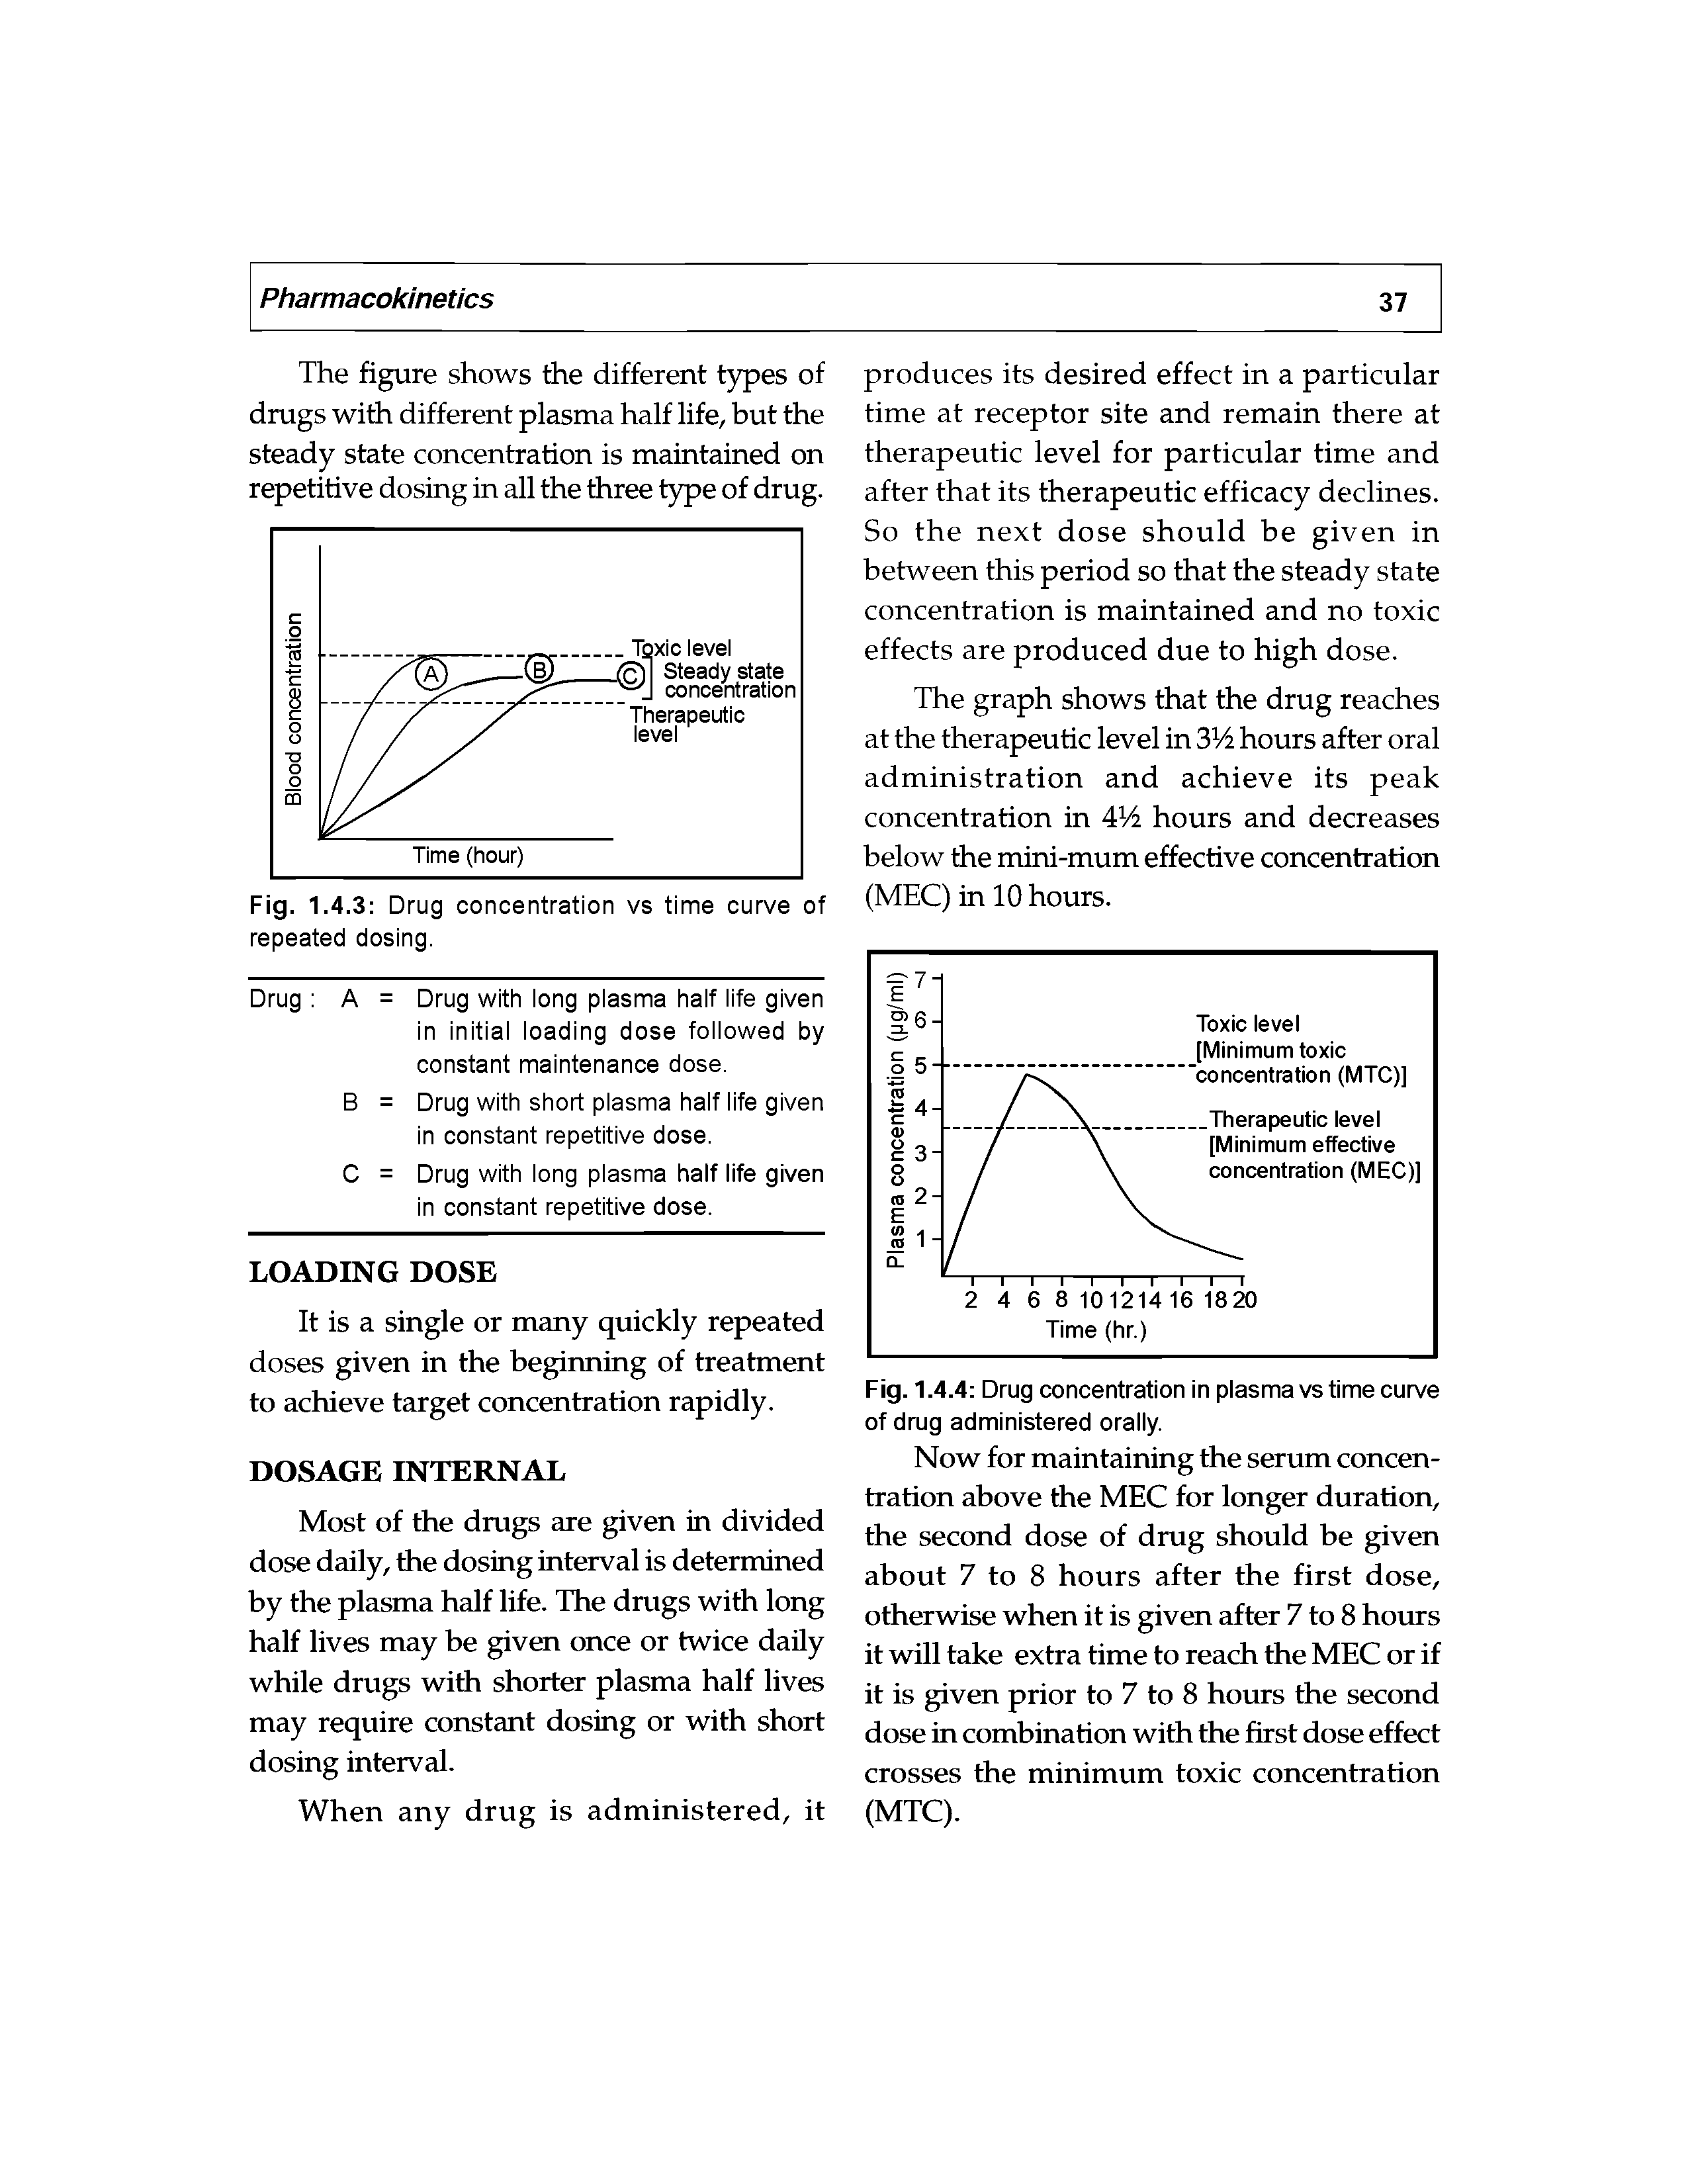 Fig. 1.4.4 Drug concentration in plasma vs time curve of drug administered orally.